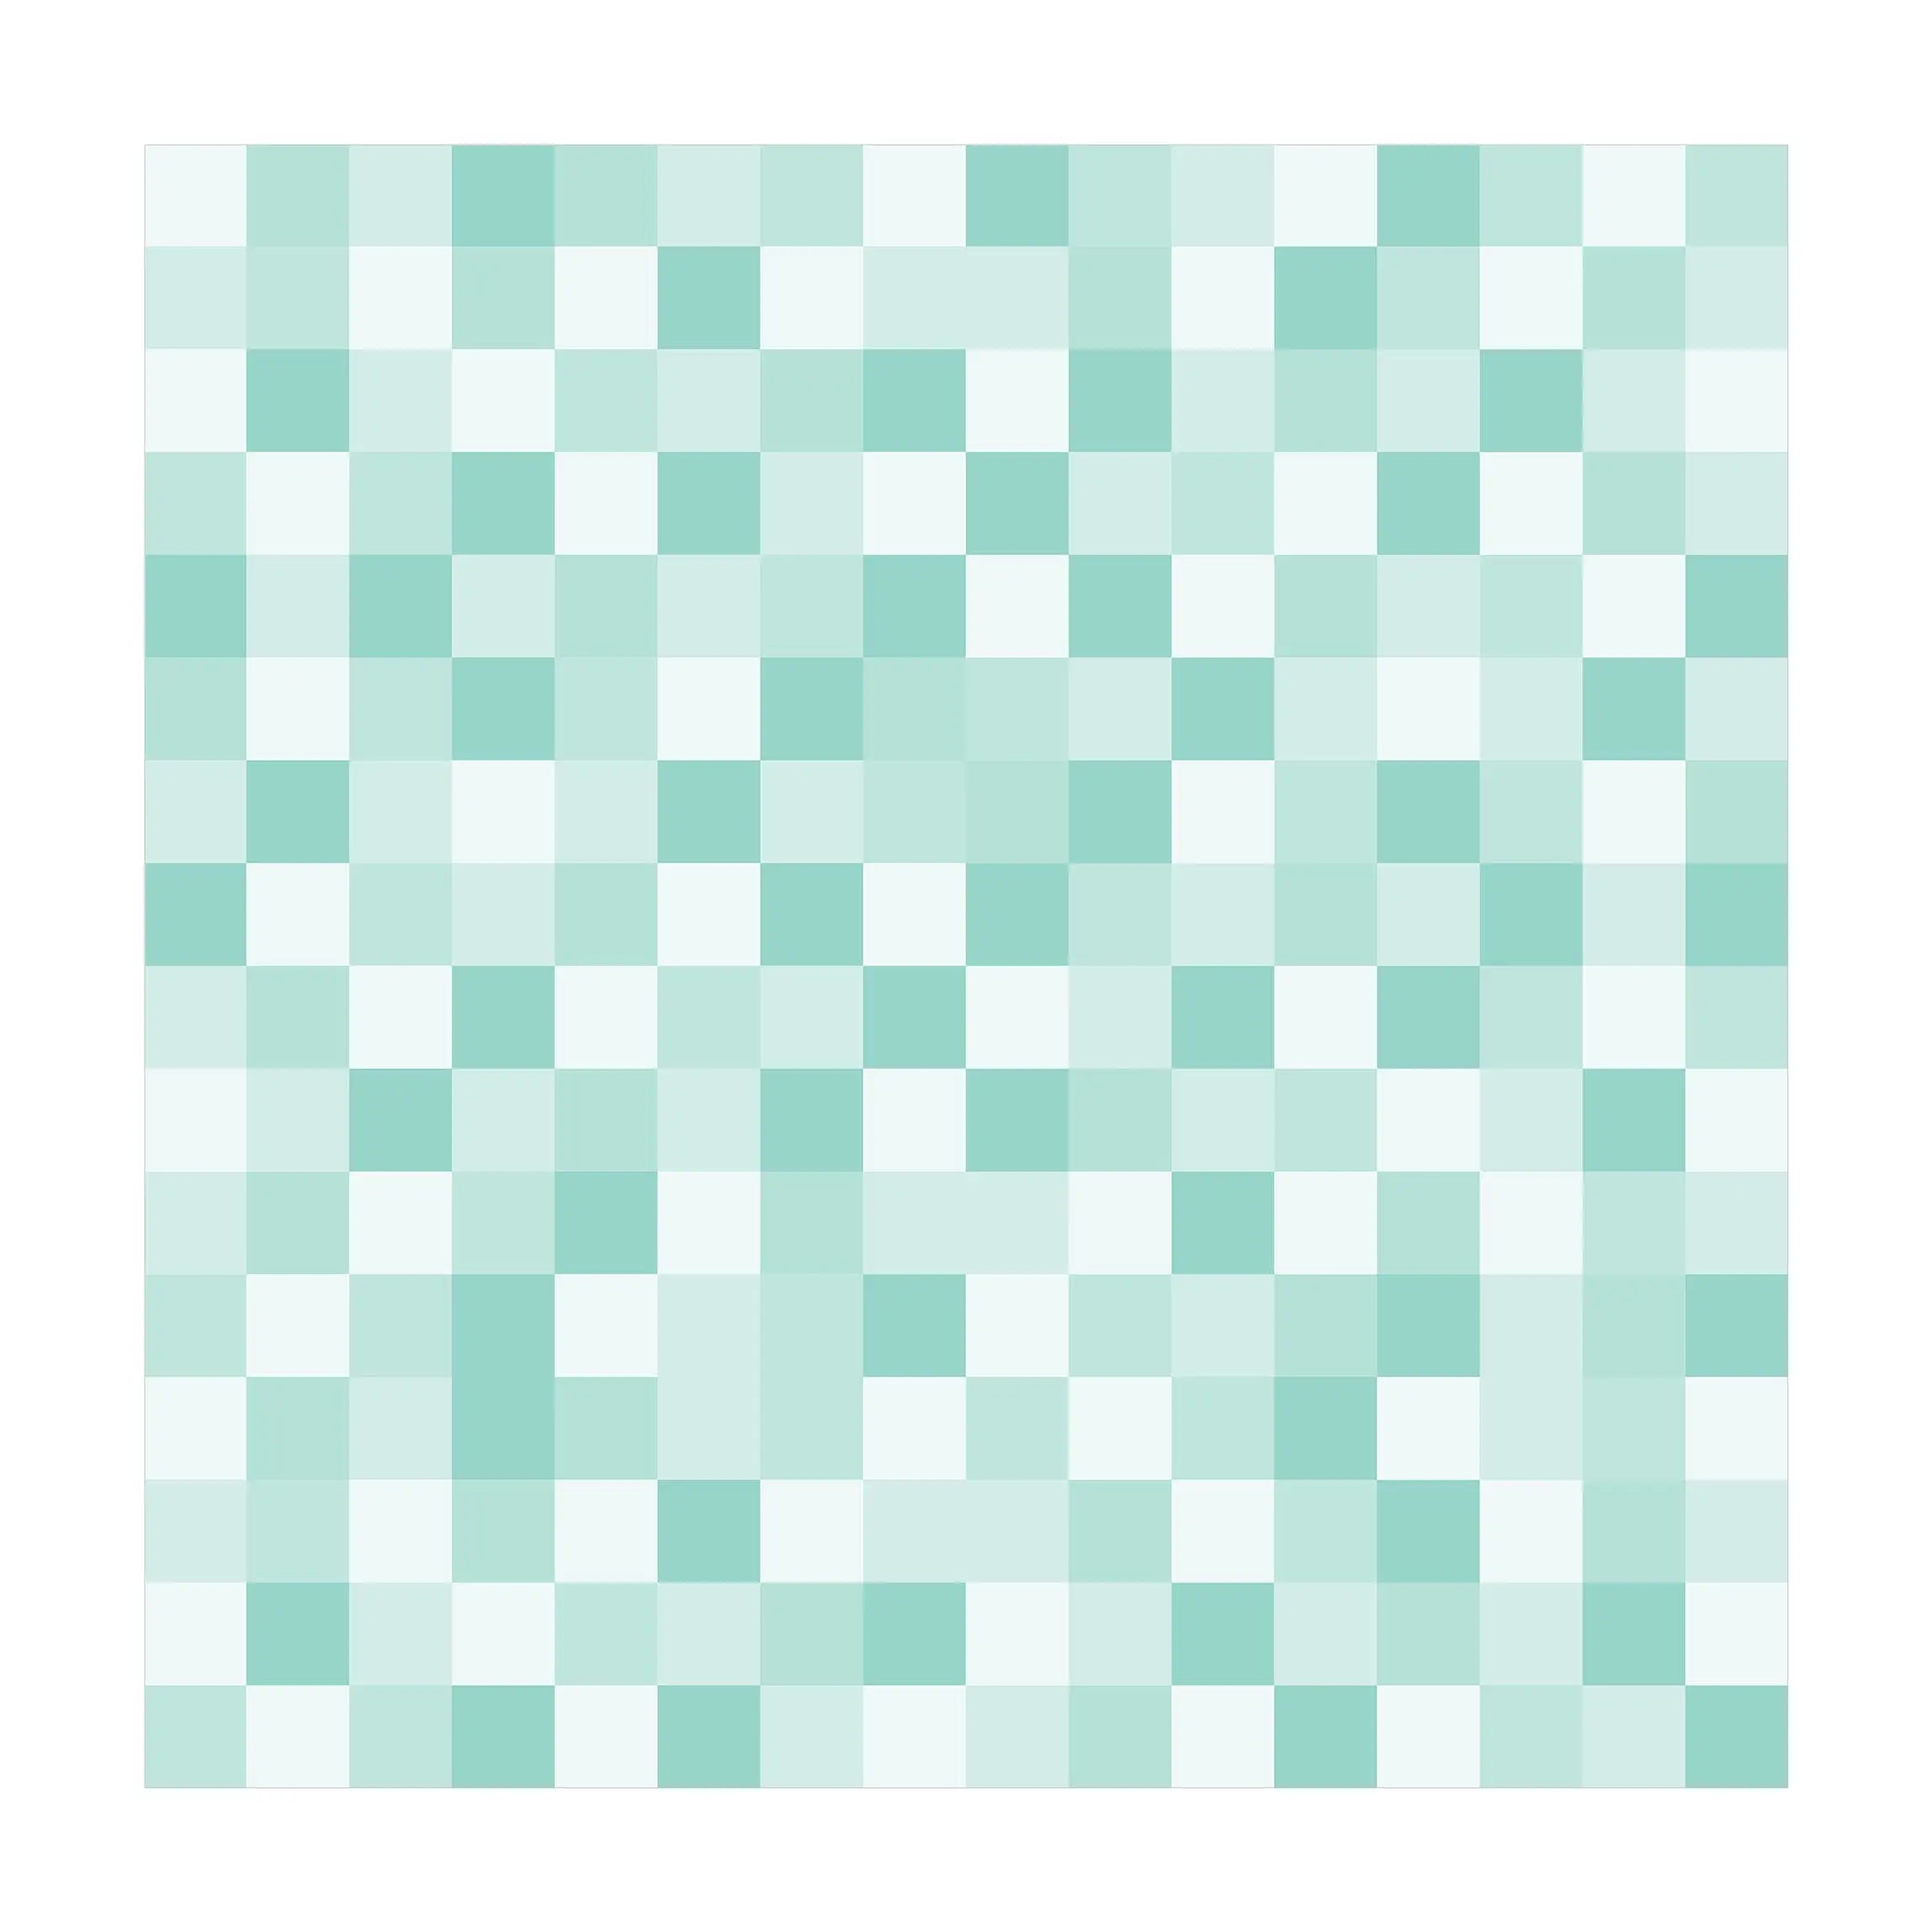 Geometrisches Muster Mosaik Mintgr眉n